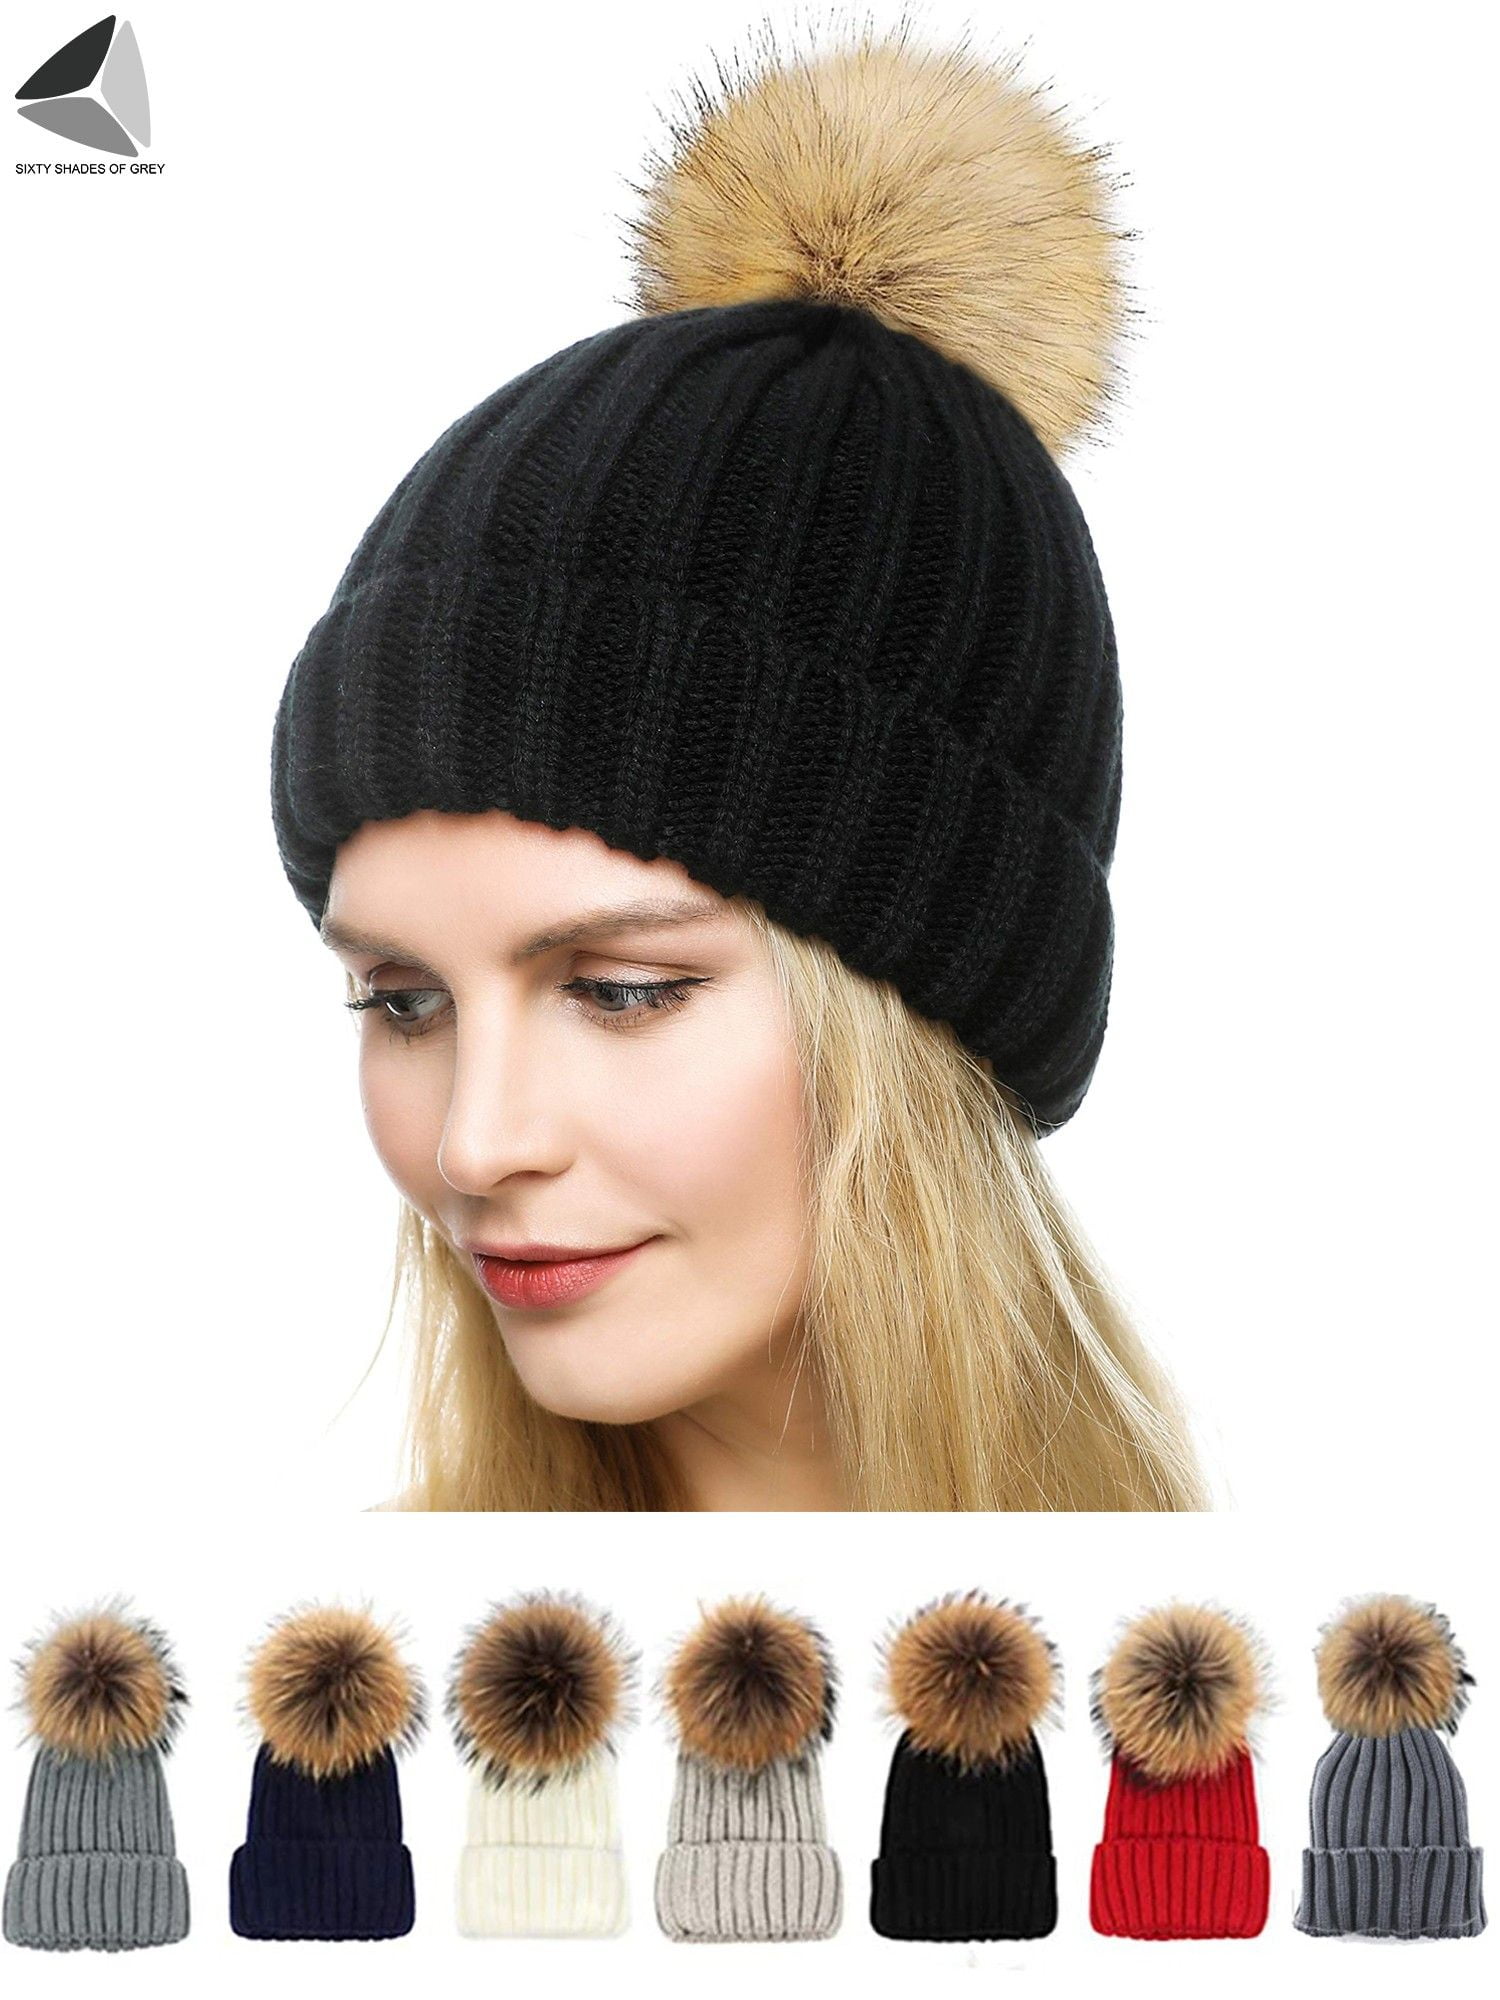 Women Winter Warm Knit Beanies PomPom Hats Soft Rabbit Fur Thermal Ski Cap Hat 